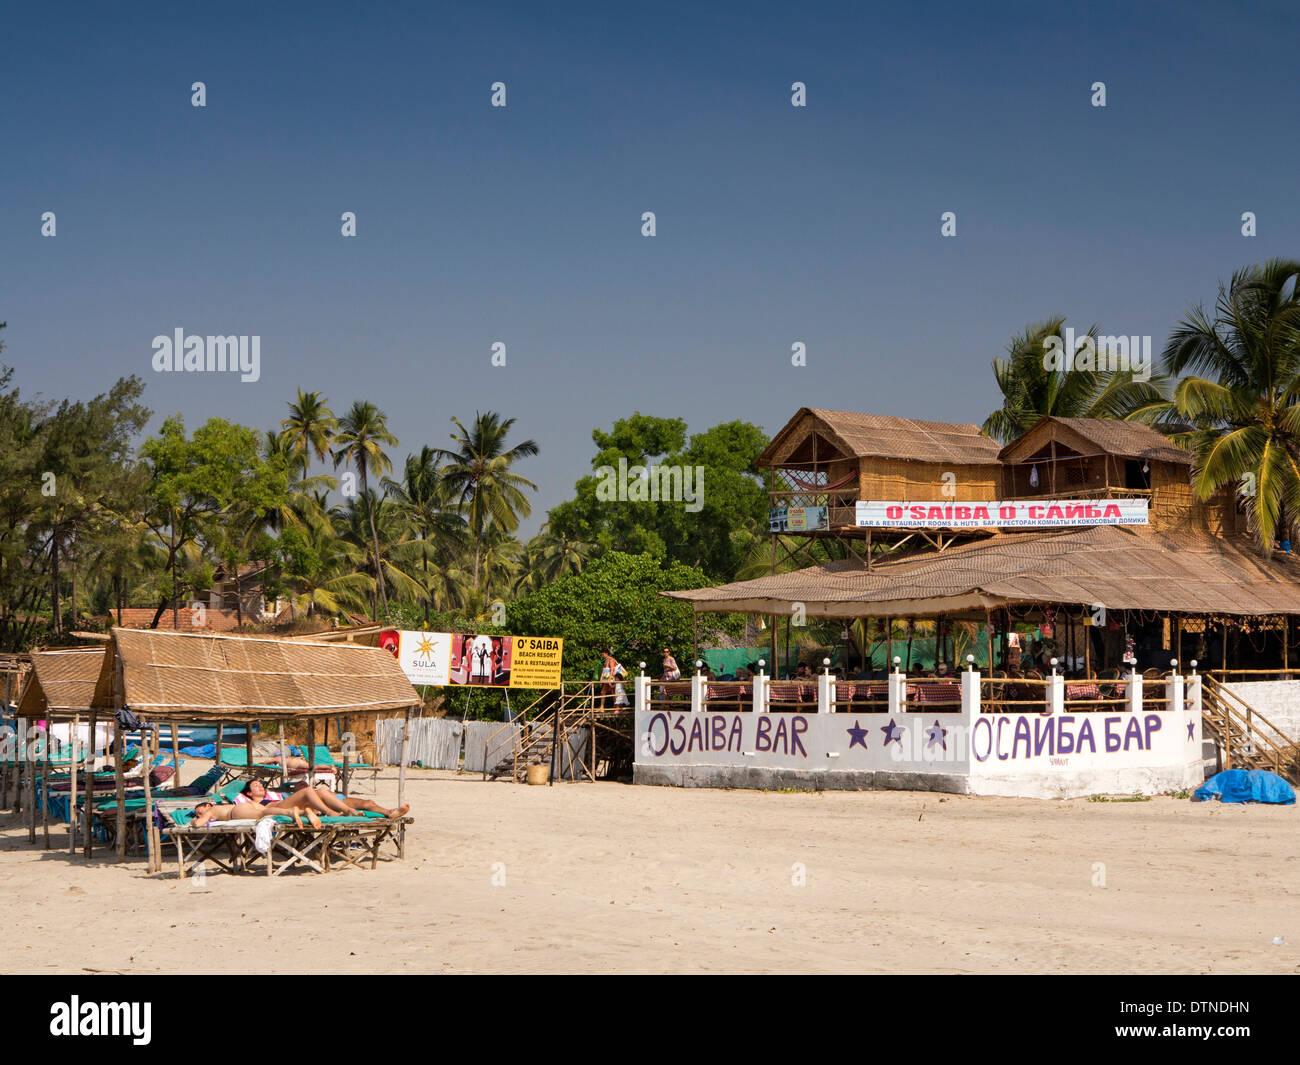 Indien, Goa, Mandrem Beach, O'Saiba Bar mit Schilder in Englisch und Russisch Kyrillisch Stockfoto